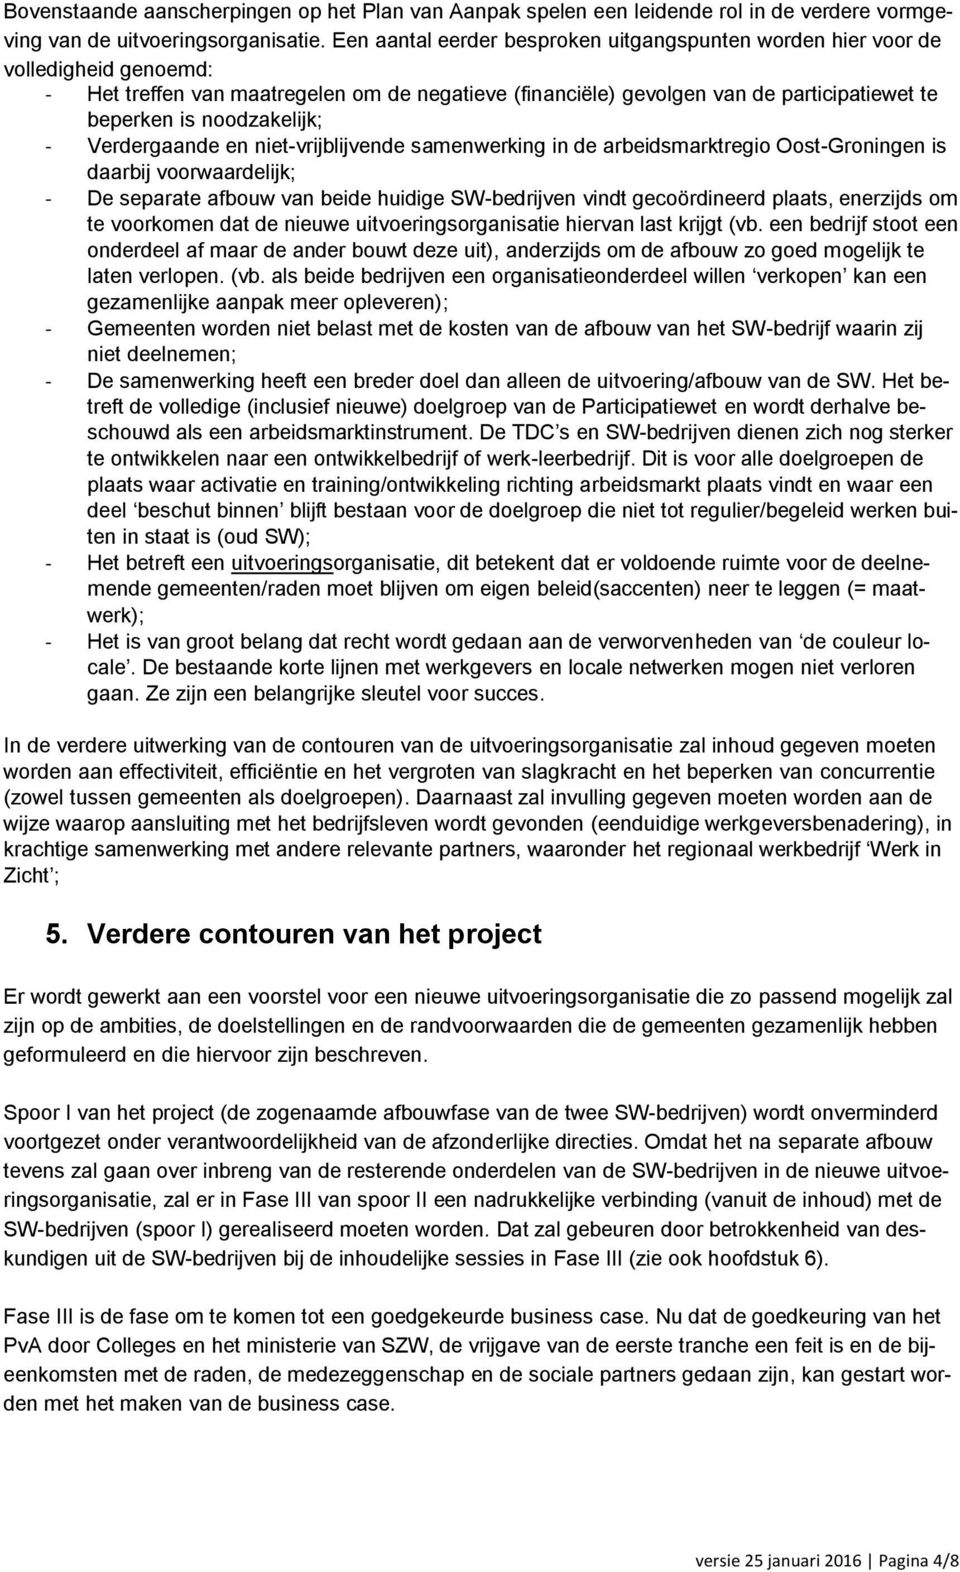 noodzakelijk; - Verdergaande en niet-vrijblijvende samenwerking in de arbeidsmarktregio Oost-Groningen is daarbij voorwaardelijk; - De separate afbouw van beide huidige SW-bedrijven vindt